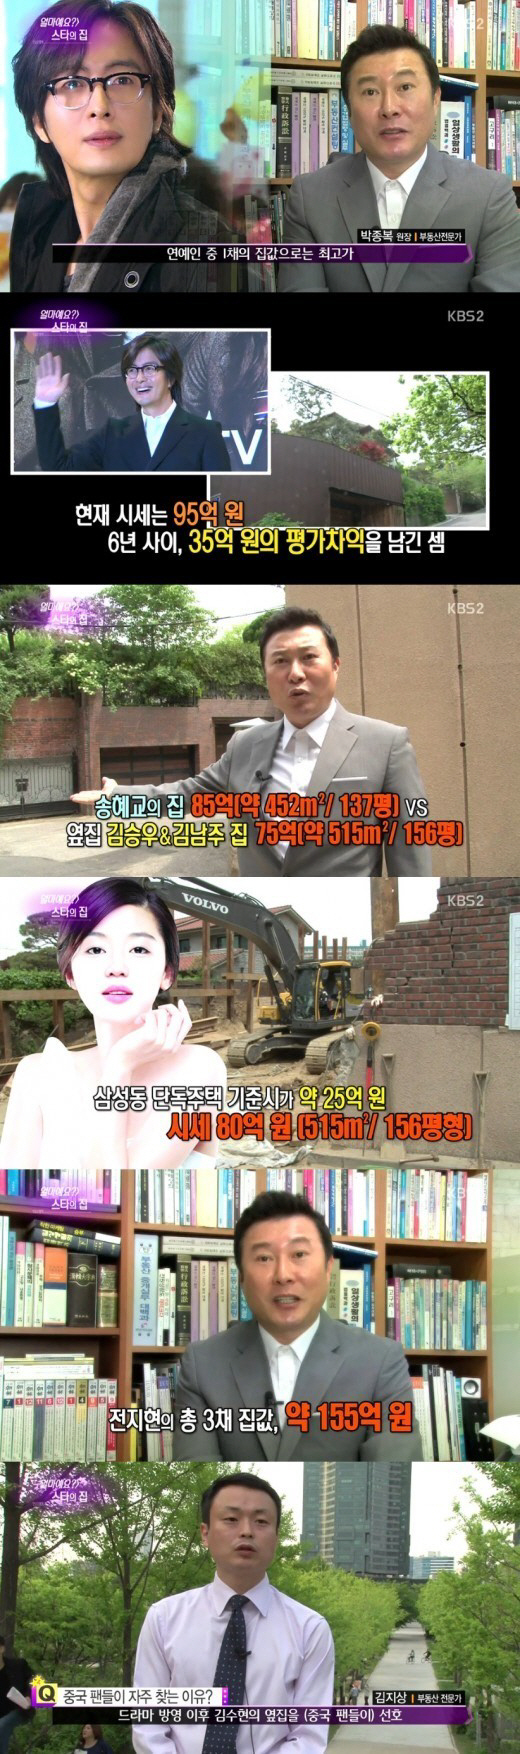 전지현, '95억 배용준' 제치고 부동산 1위.."집 세 채 155억원"